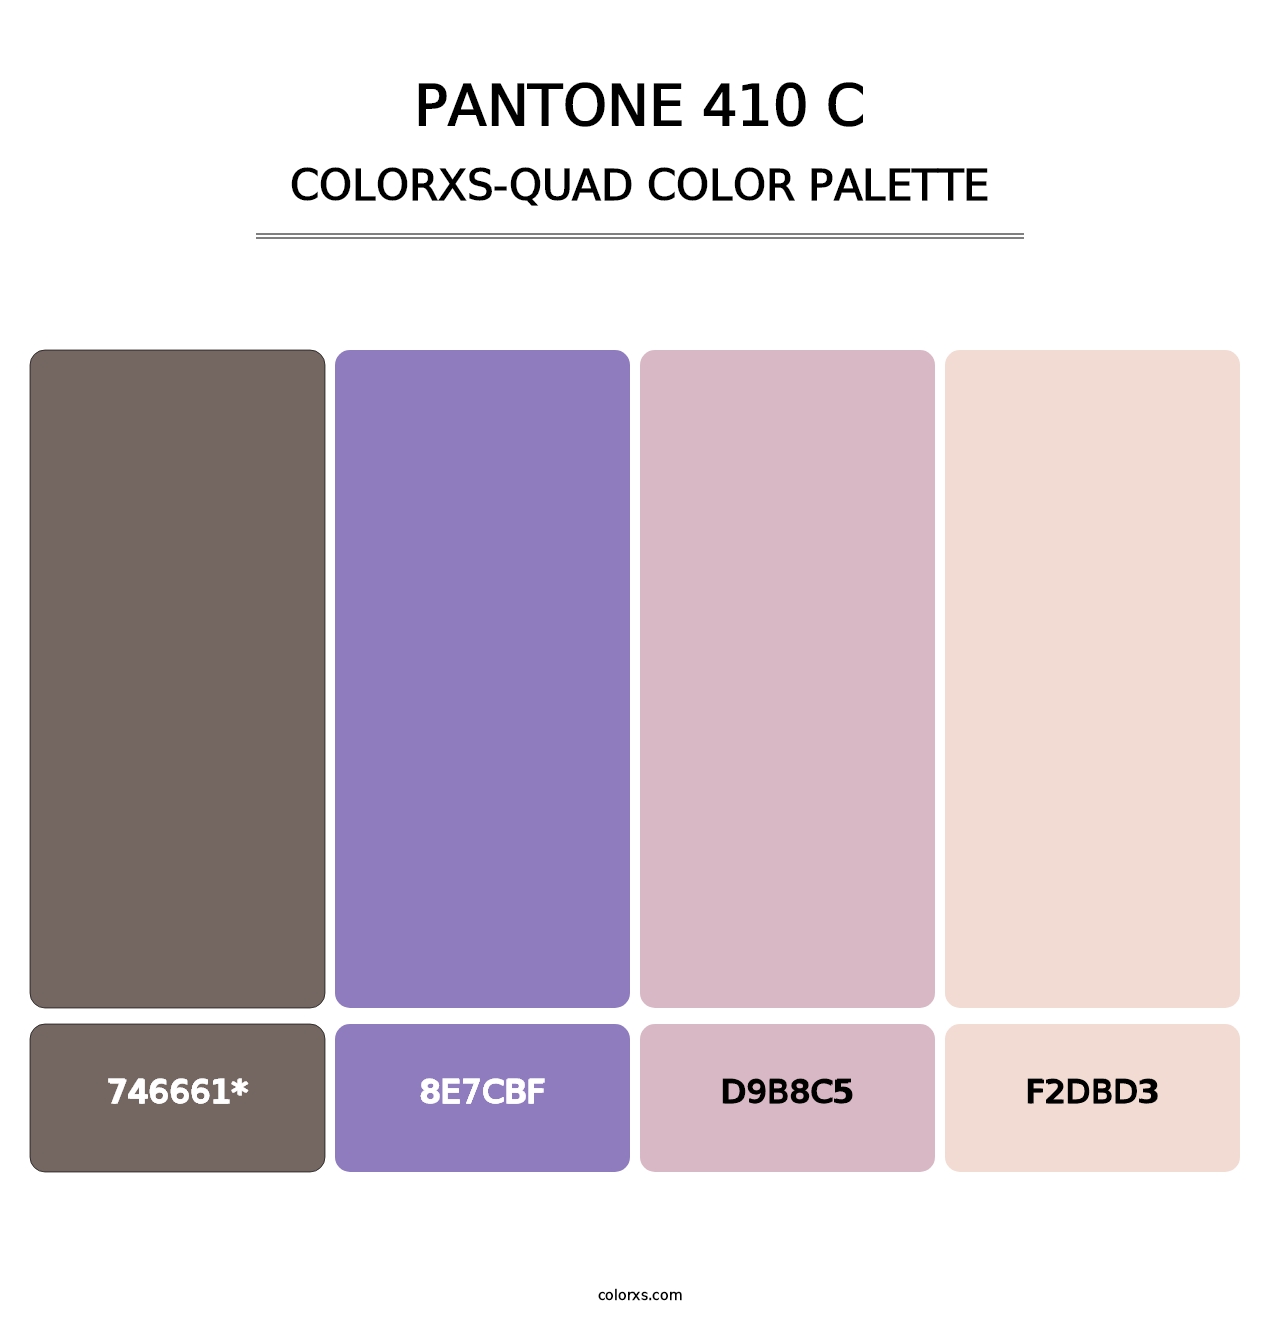 PANTONE 410 C - Colorxs Quad Palette